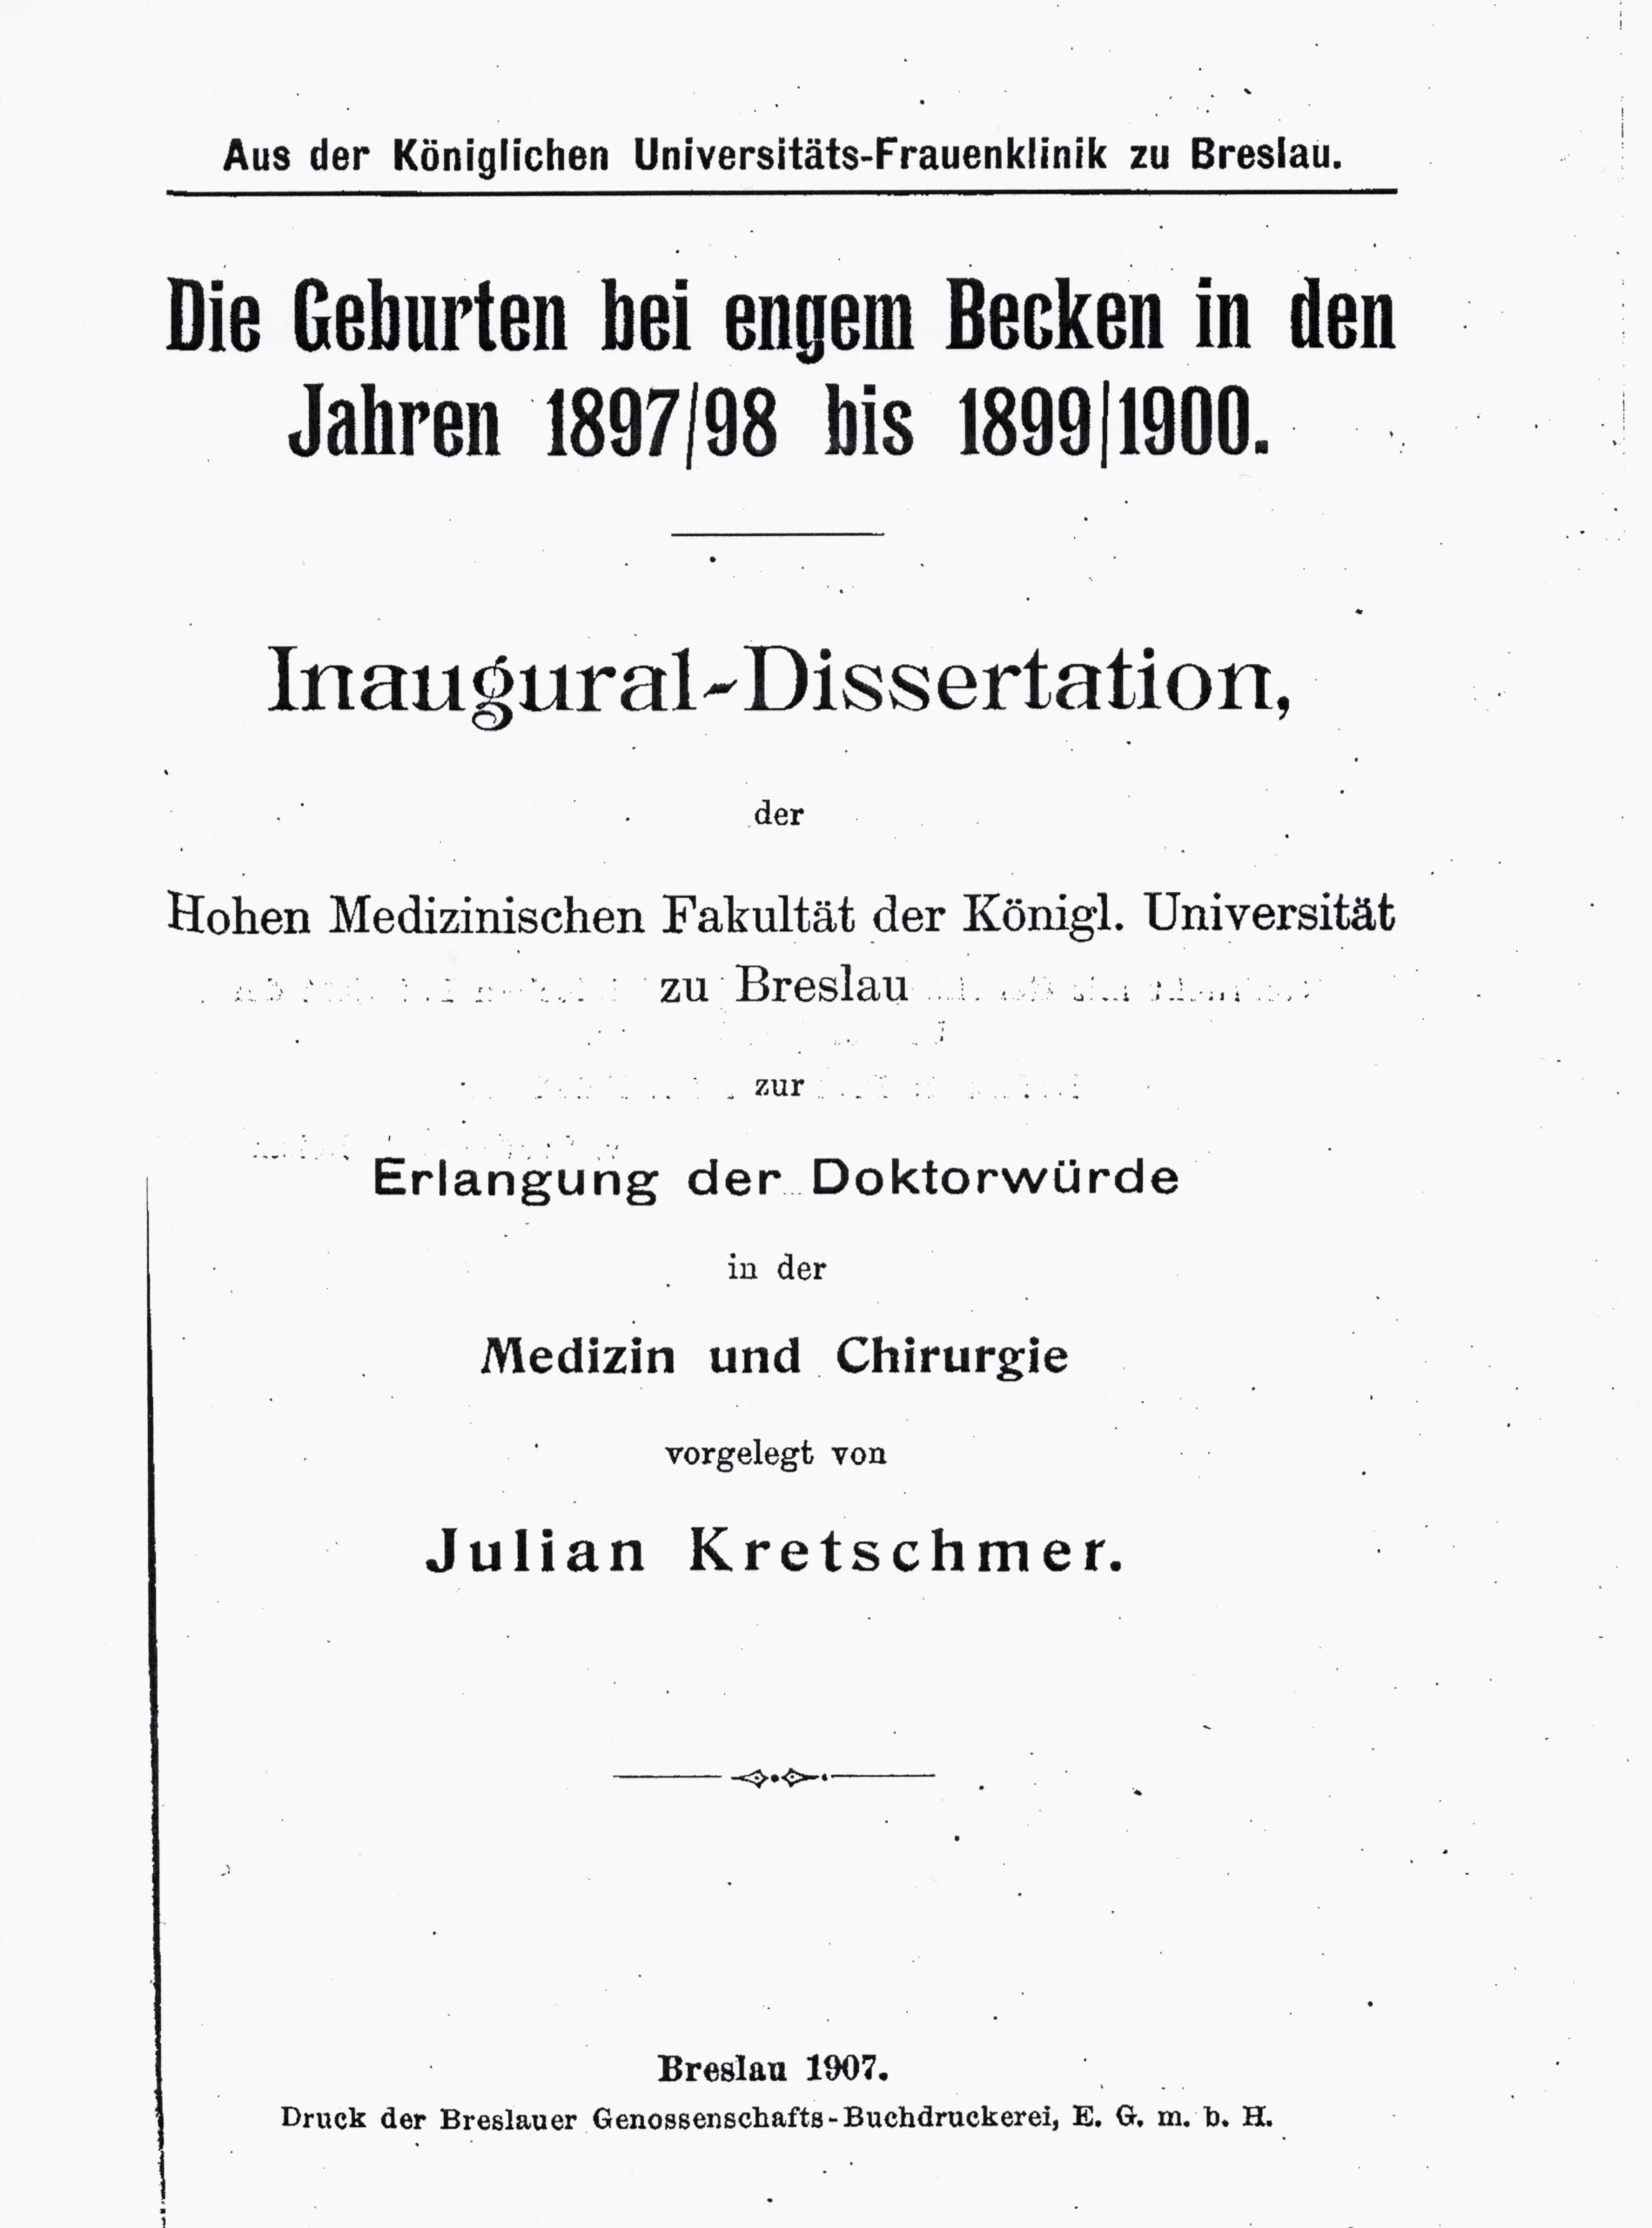 Dissertation 1907, Kopie Titelblatt, Archiv H Je